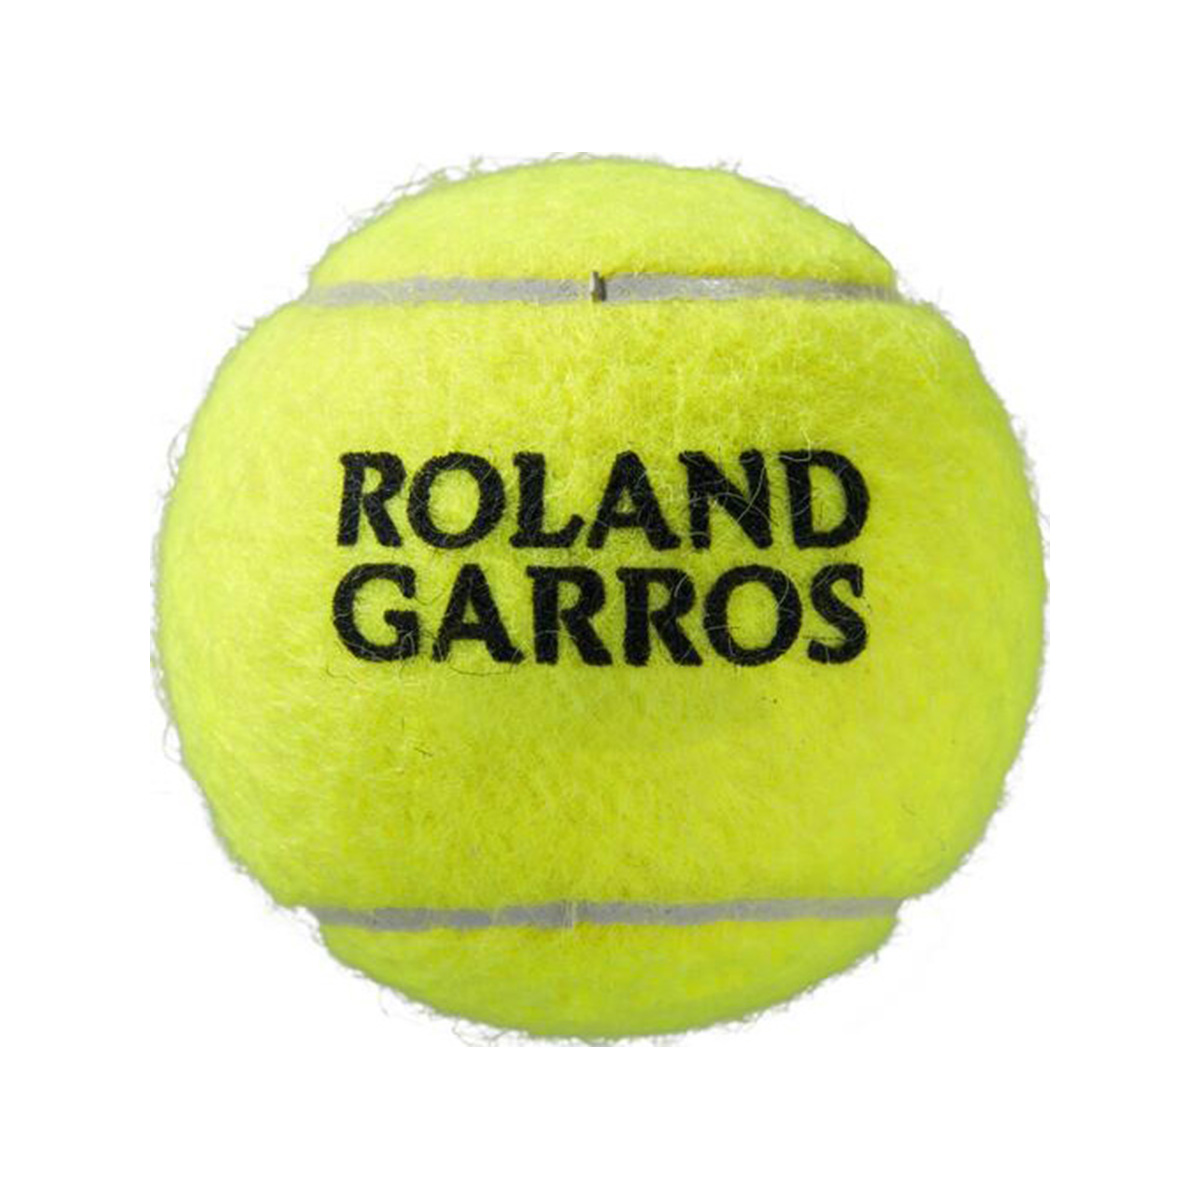 фото Теннисный мяч wilson roland garros all 3 шт yellow